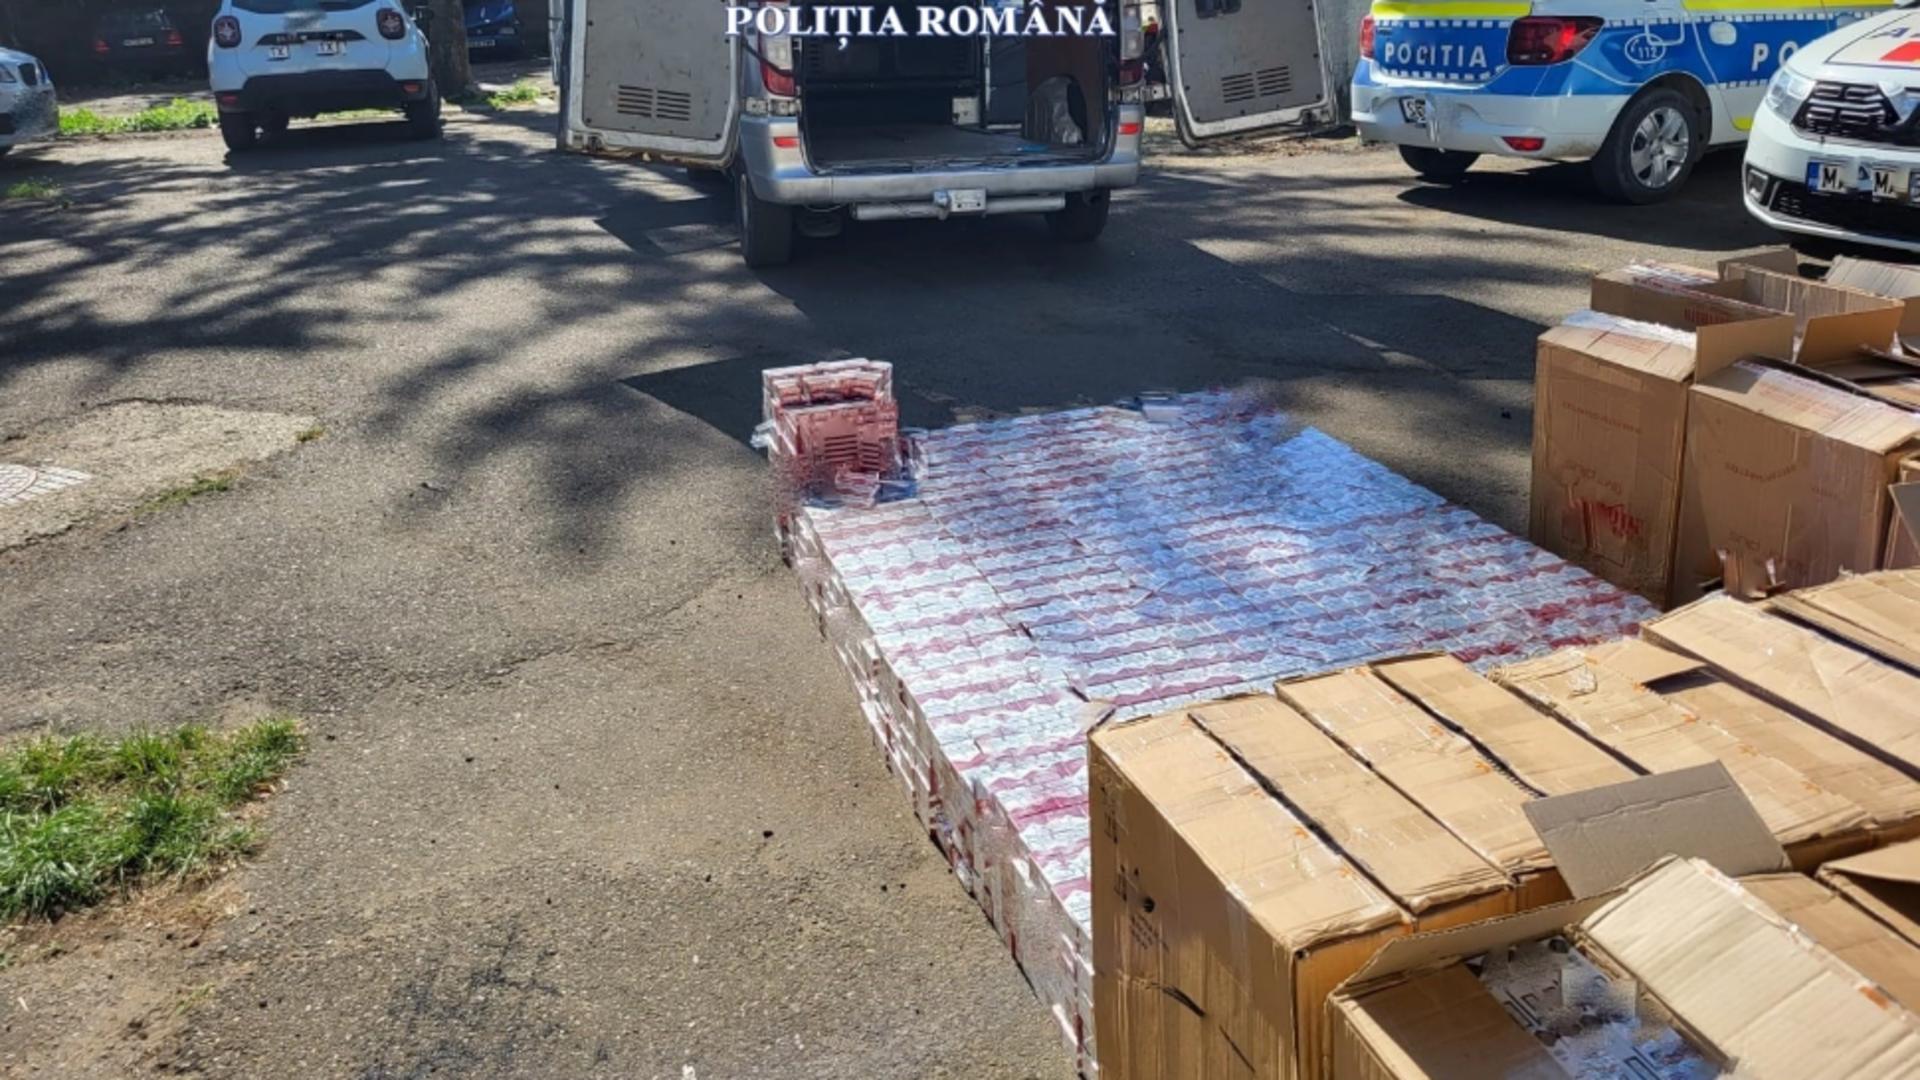 Bărbat din Suceava prins cu aproape 40.000 de pachete de țigări de contrabandă în mașină FOTO/VIDEO